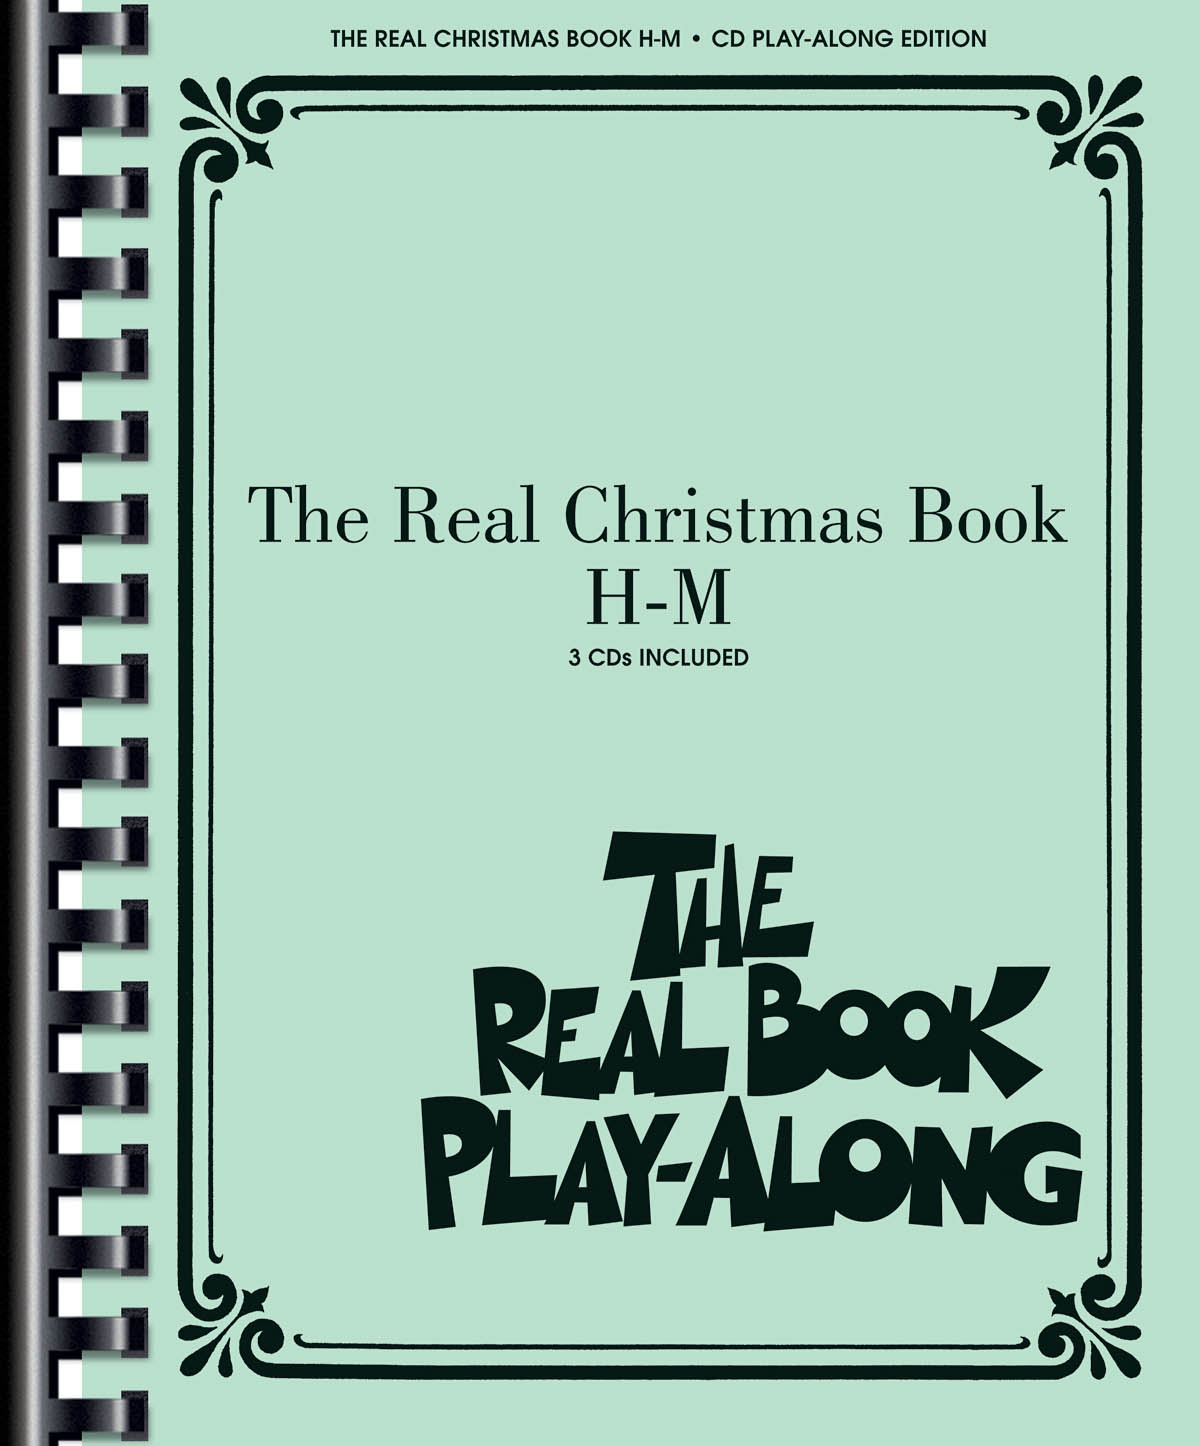 The Real Christmas Book Play-Along, Vol. H-M - noty pro nástroje v ladění C